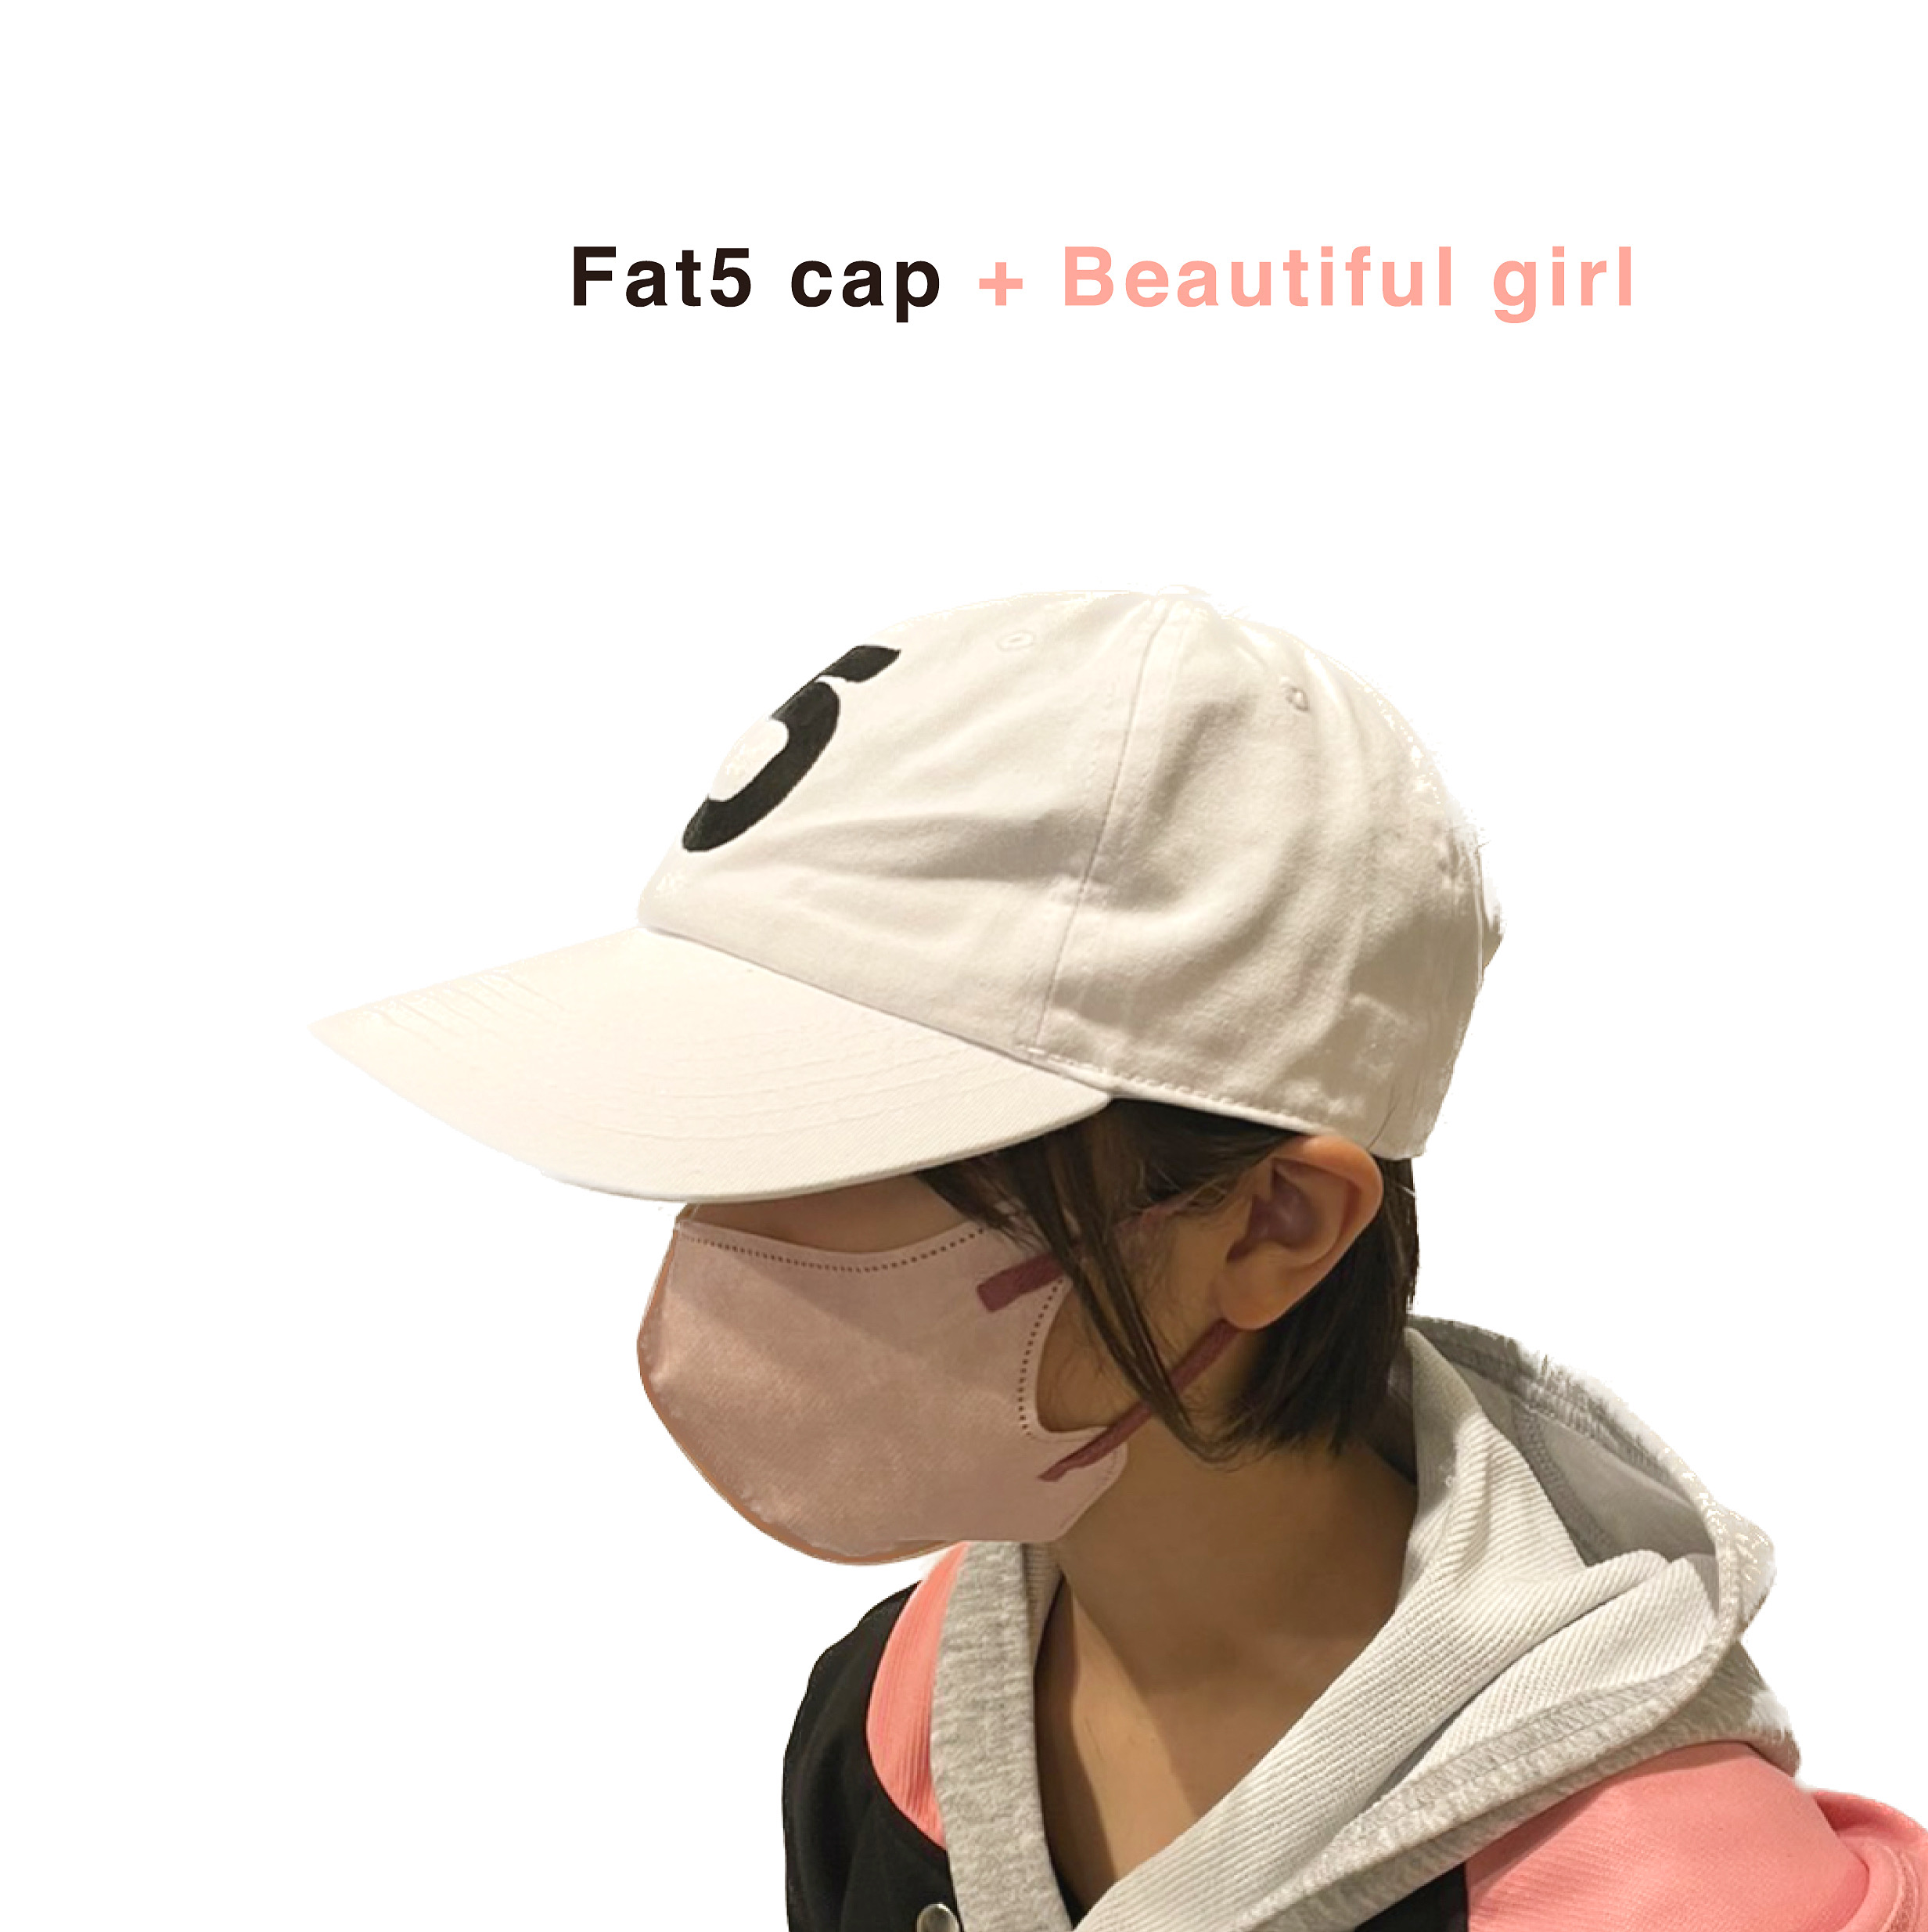 Fat5 cap + Beautiful girl by chronic5